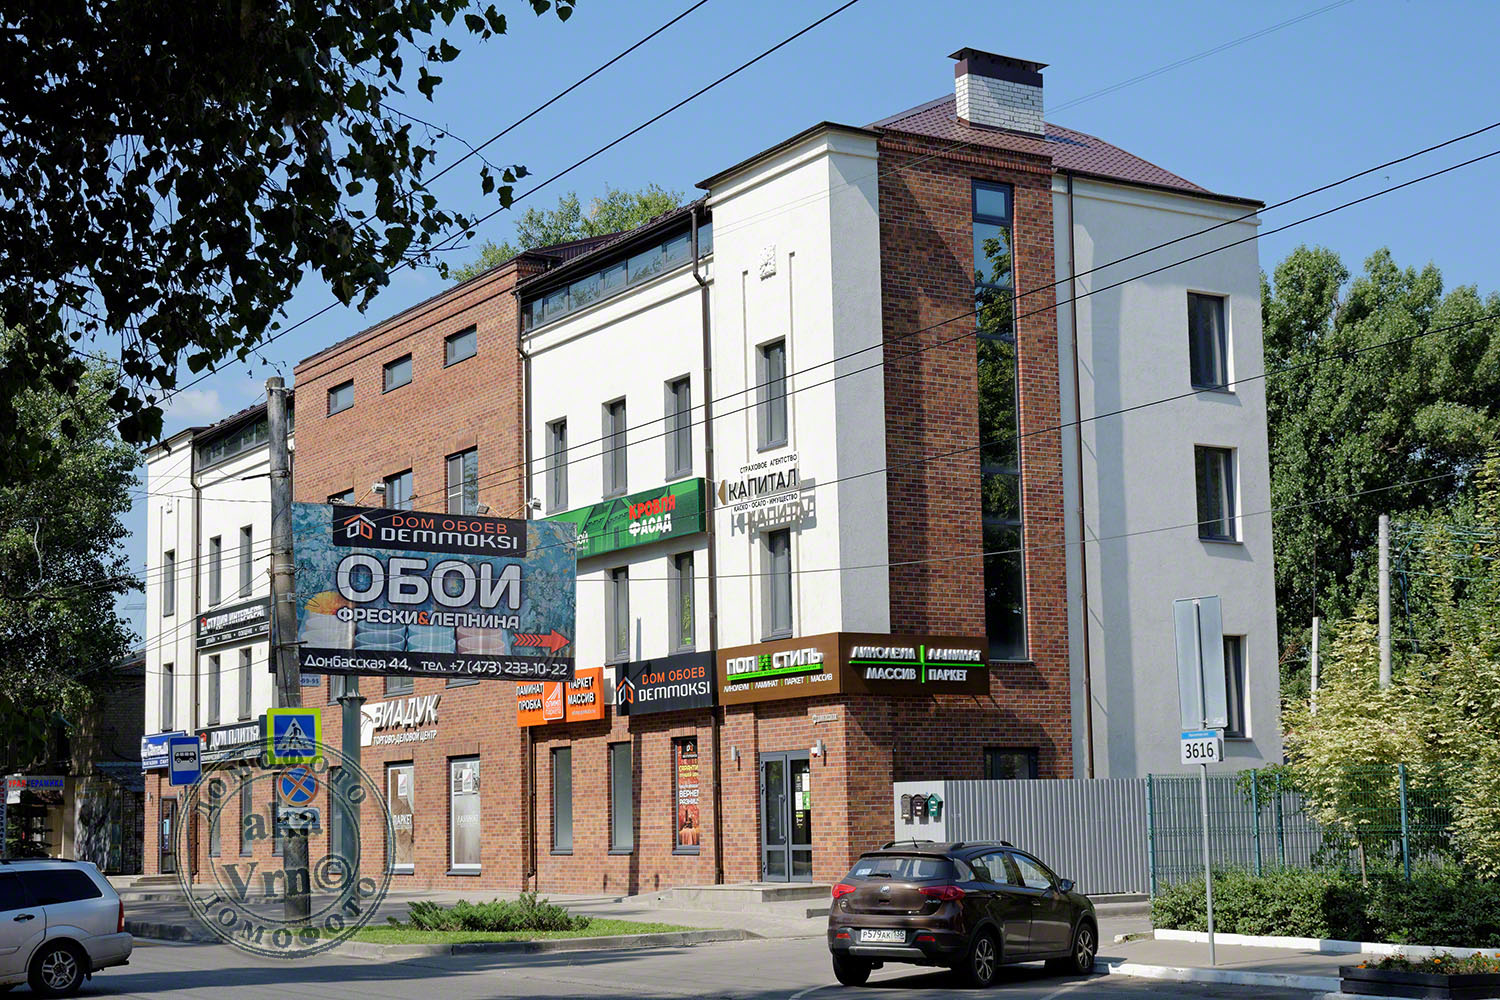 Воронеж, Донбасская улица, 44